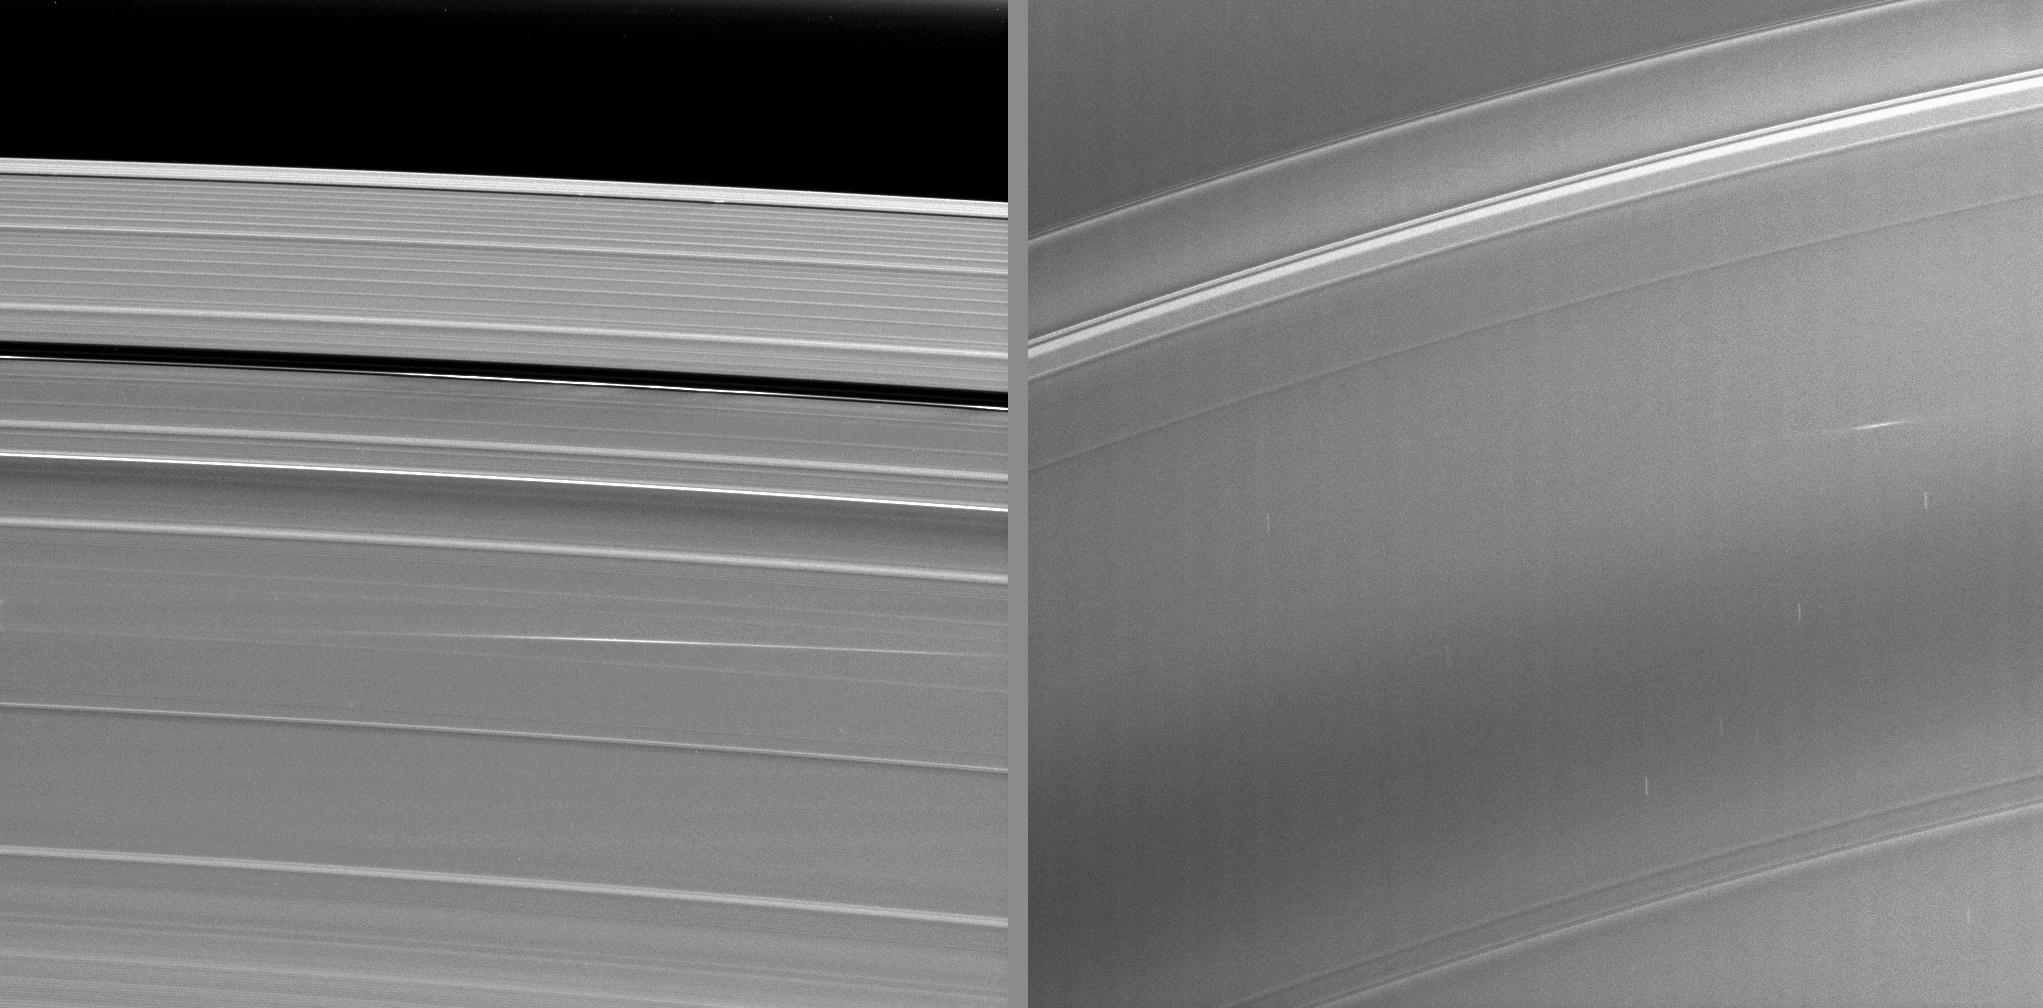 Bright streaks on Saturn's rings